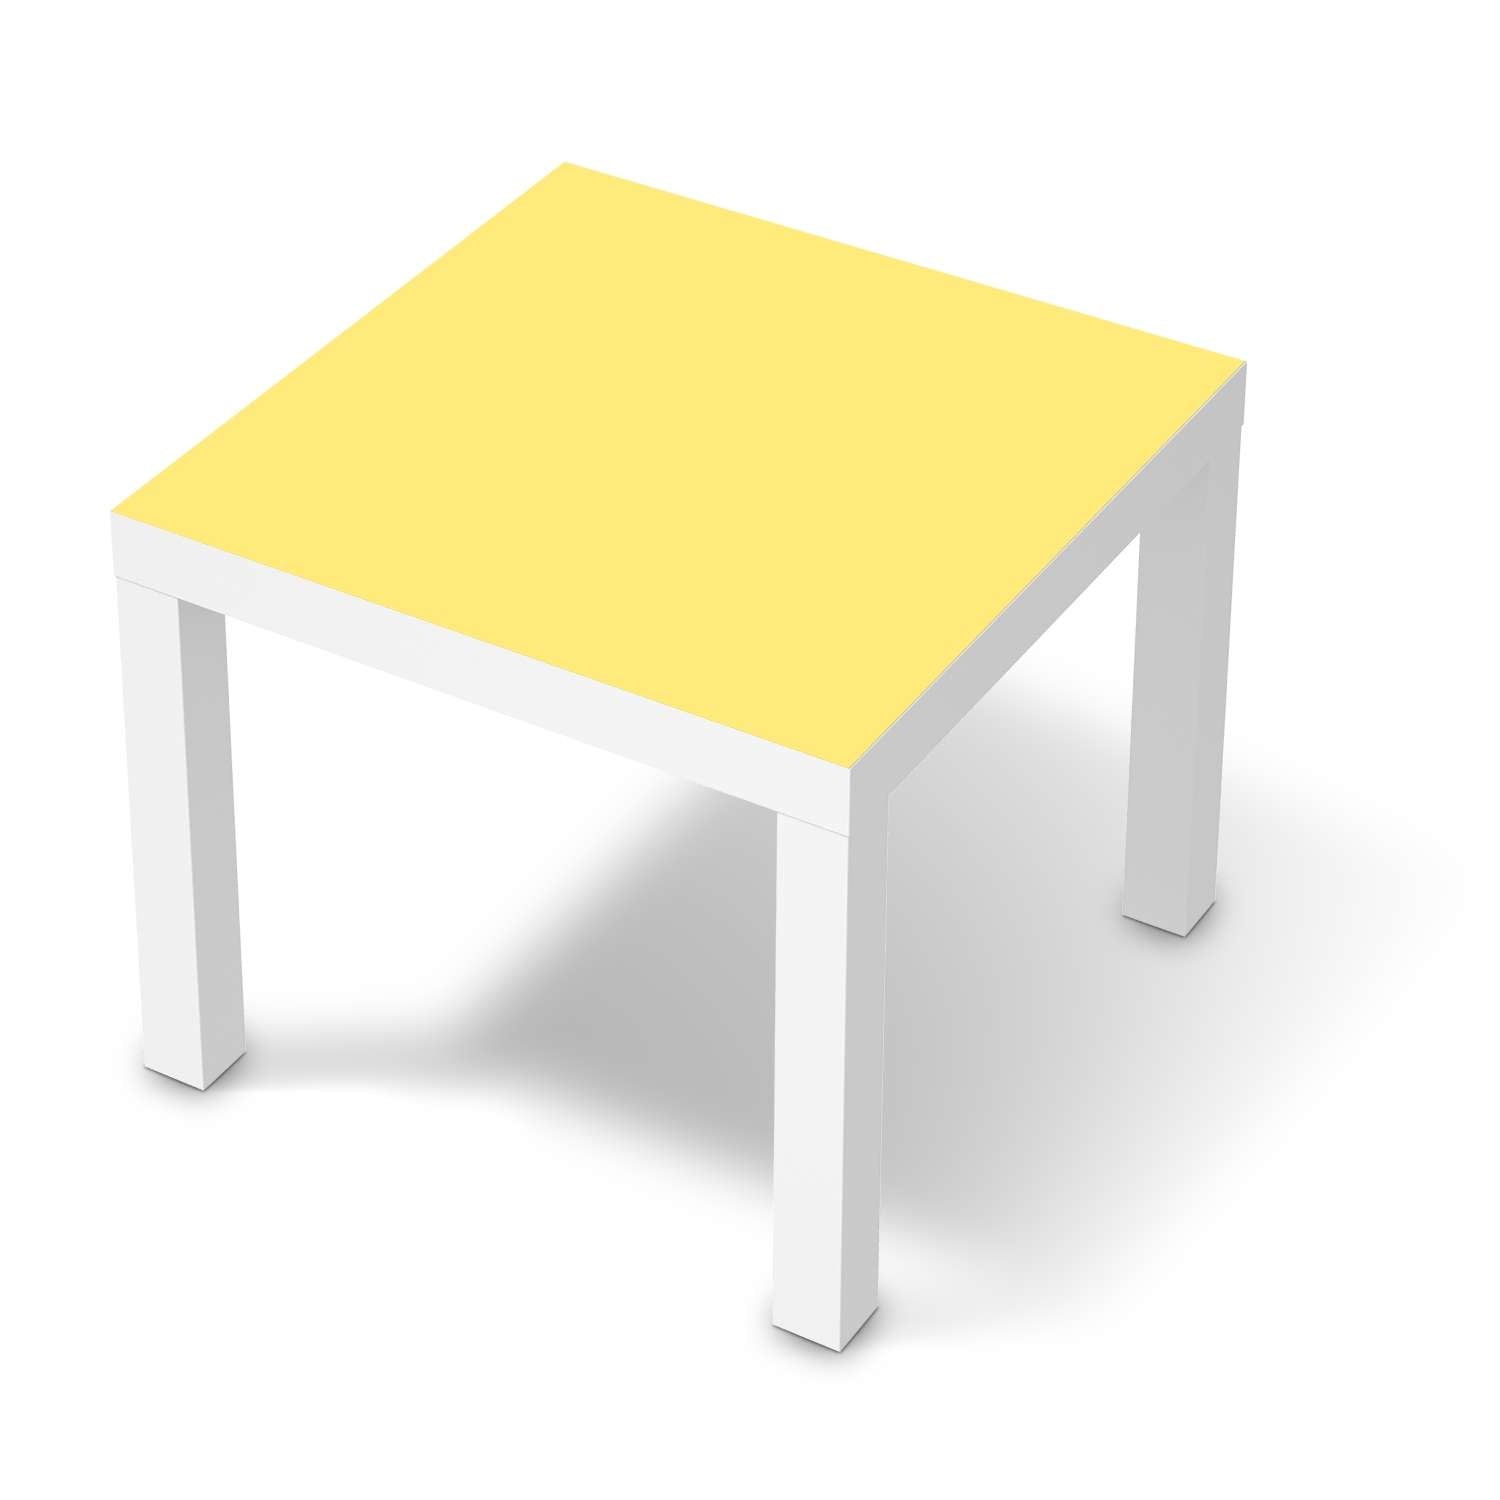 M?belfolie IKEA Lack Tisch 55x55 cm - Design: Gelb Light von creatisto